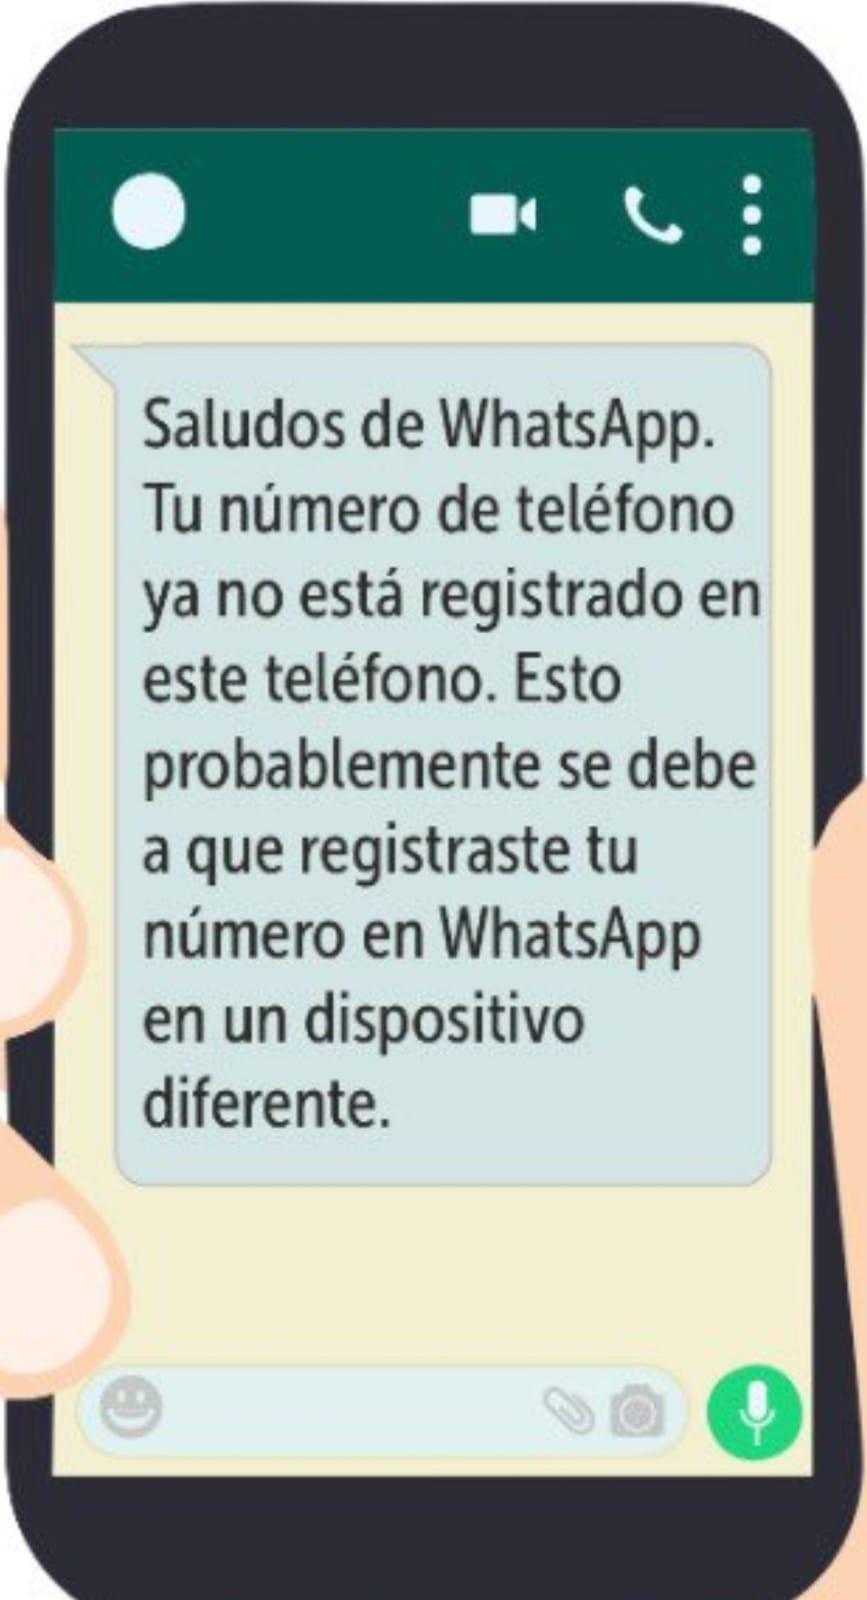 Mensajes desconocidos enviados a través de la aplicación de WhatsApp pueden terminar en sun secuestro de tu cuenta- FOTO: Prensa CAI virtual 